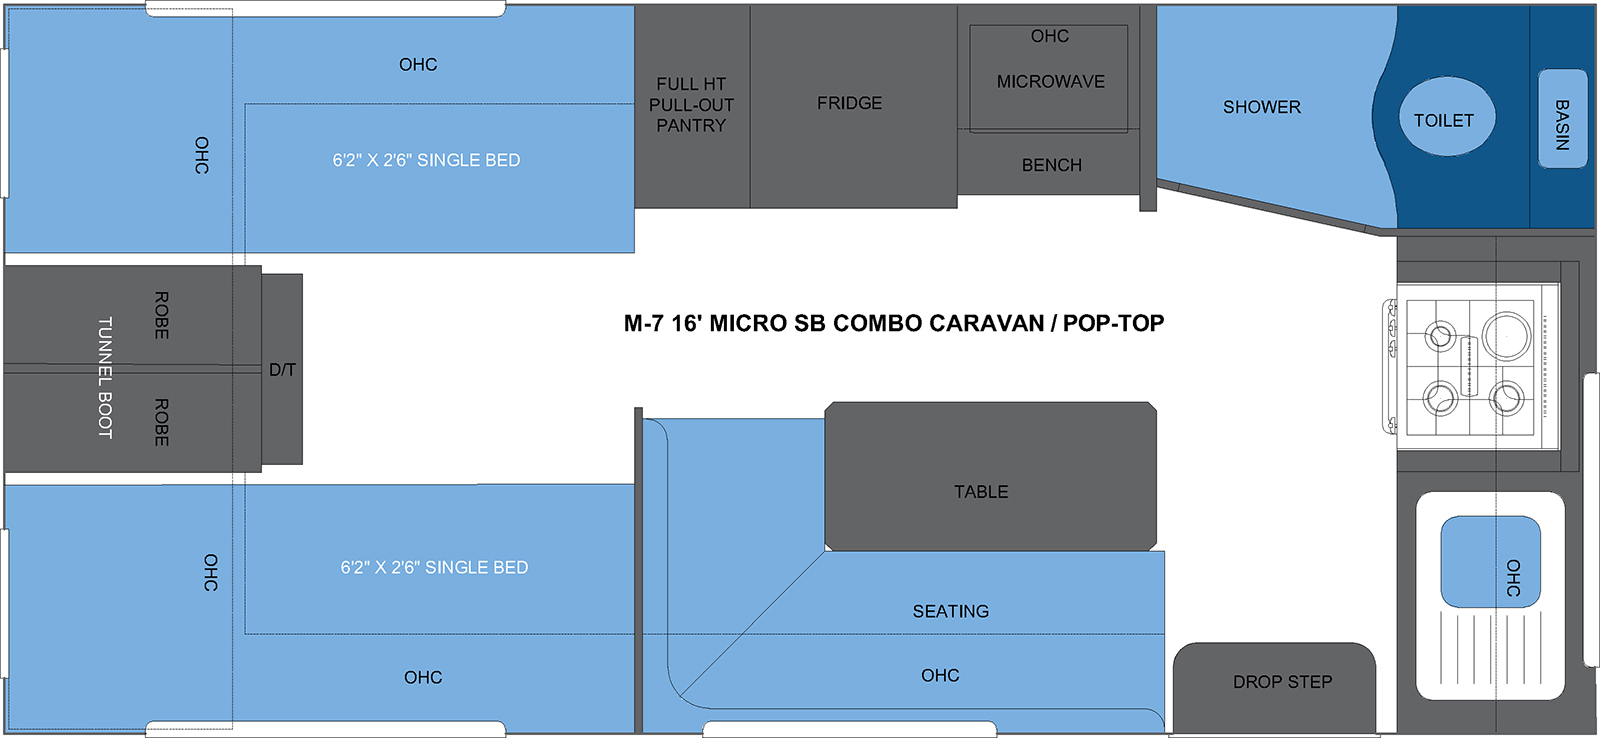 M-7 16' MICRO SB COMBO CARAVAN-POP-TOP